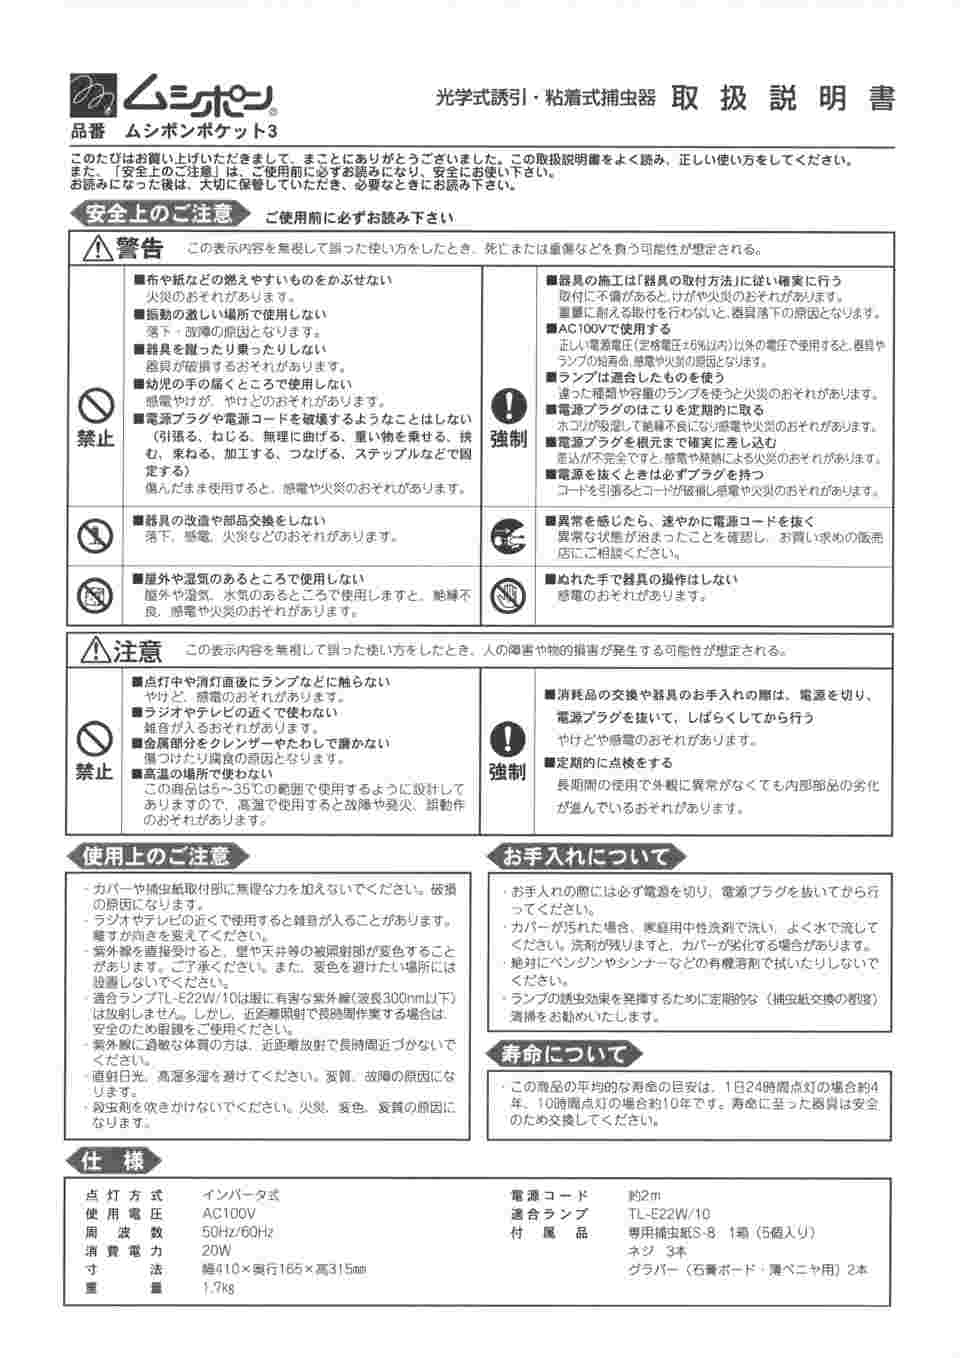 55%OFF!】 おしゃれガーデニング用品館朝日産業 捕虫器 ムシポン MP-8000 1台